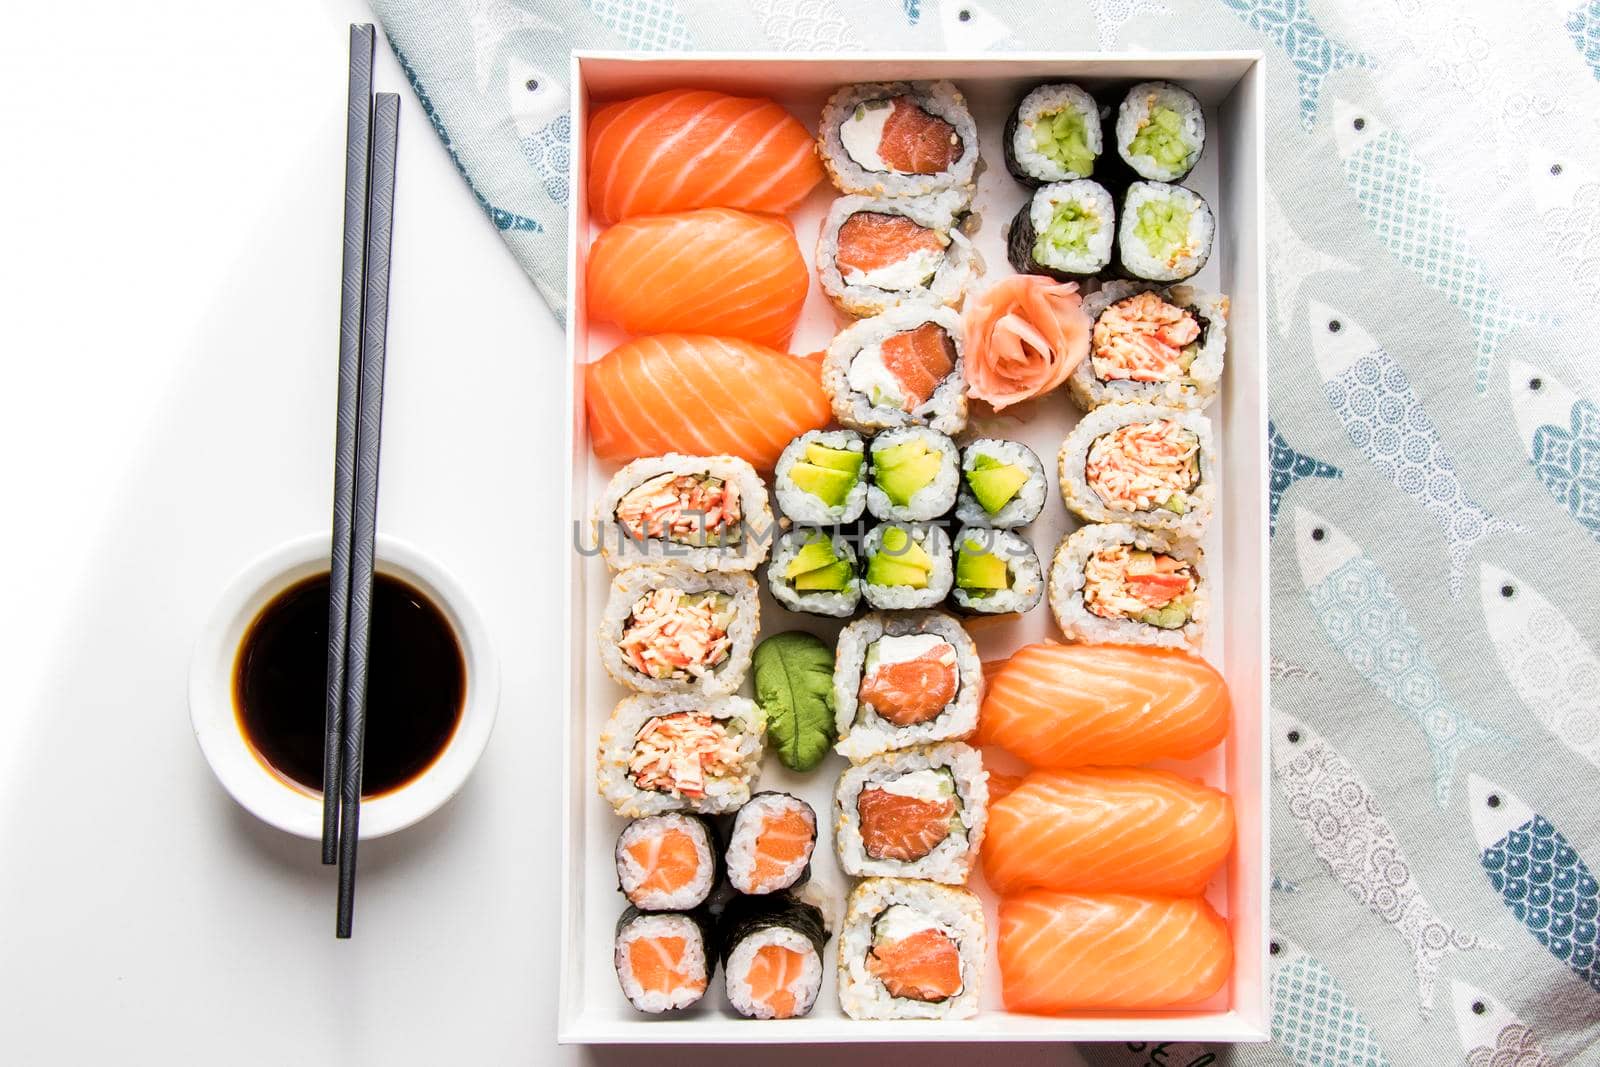 Japanishe food Nigiri sushi set, salmon, tuna and shrimp sushi, high angle view